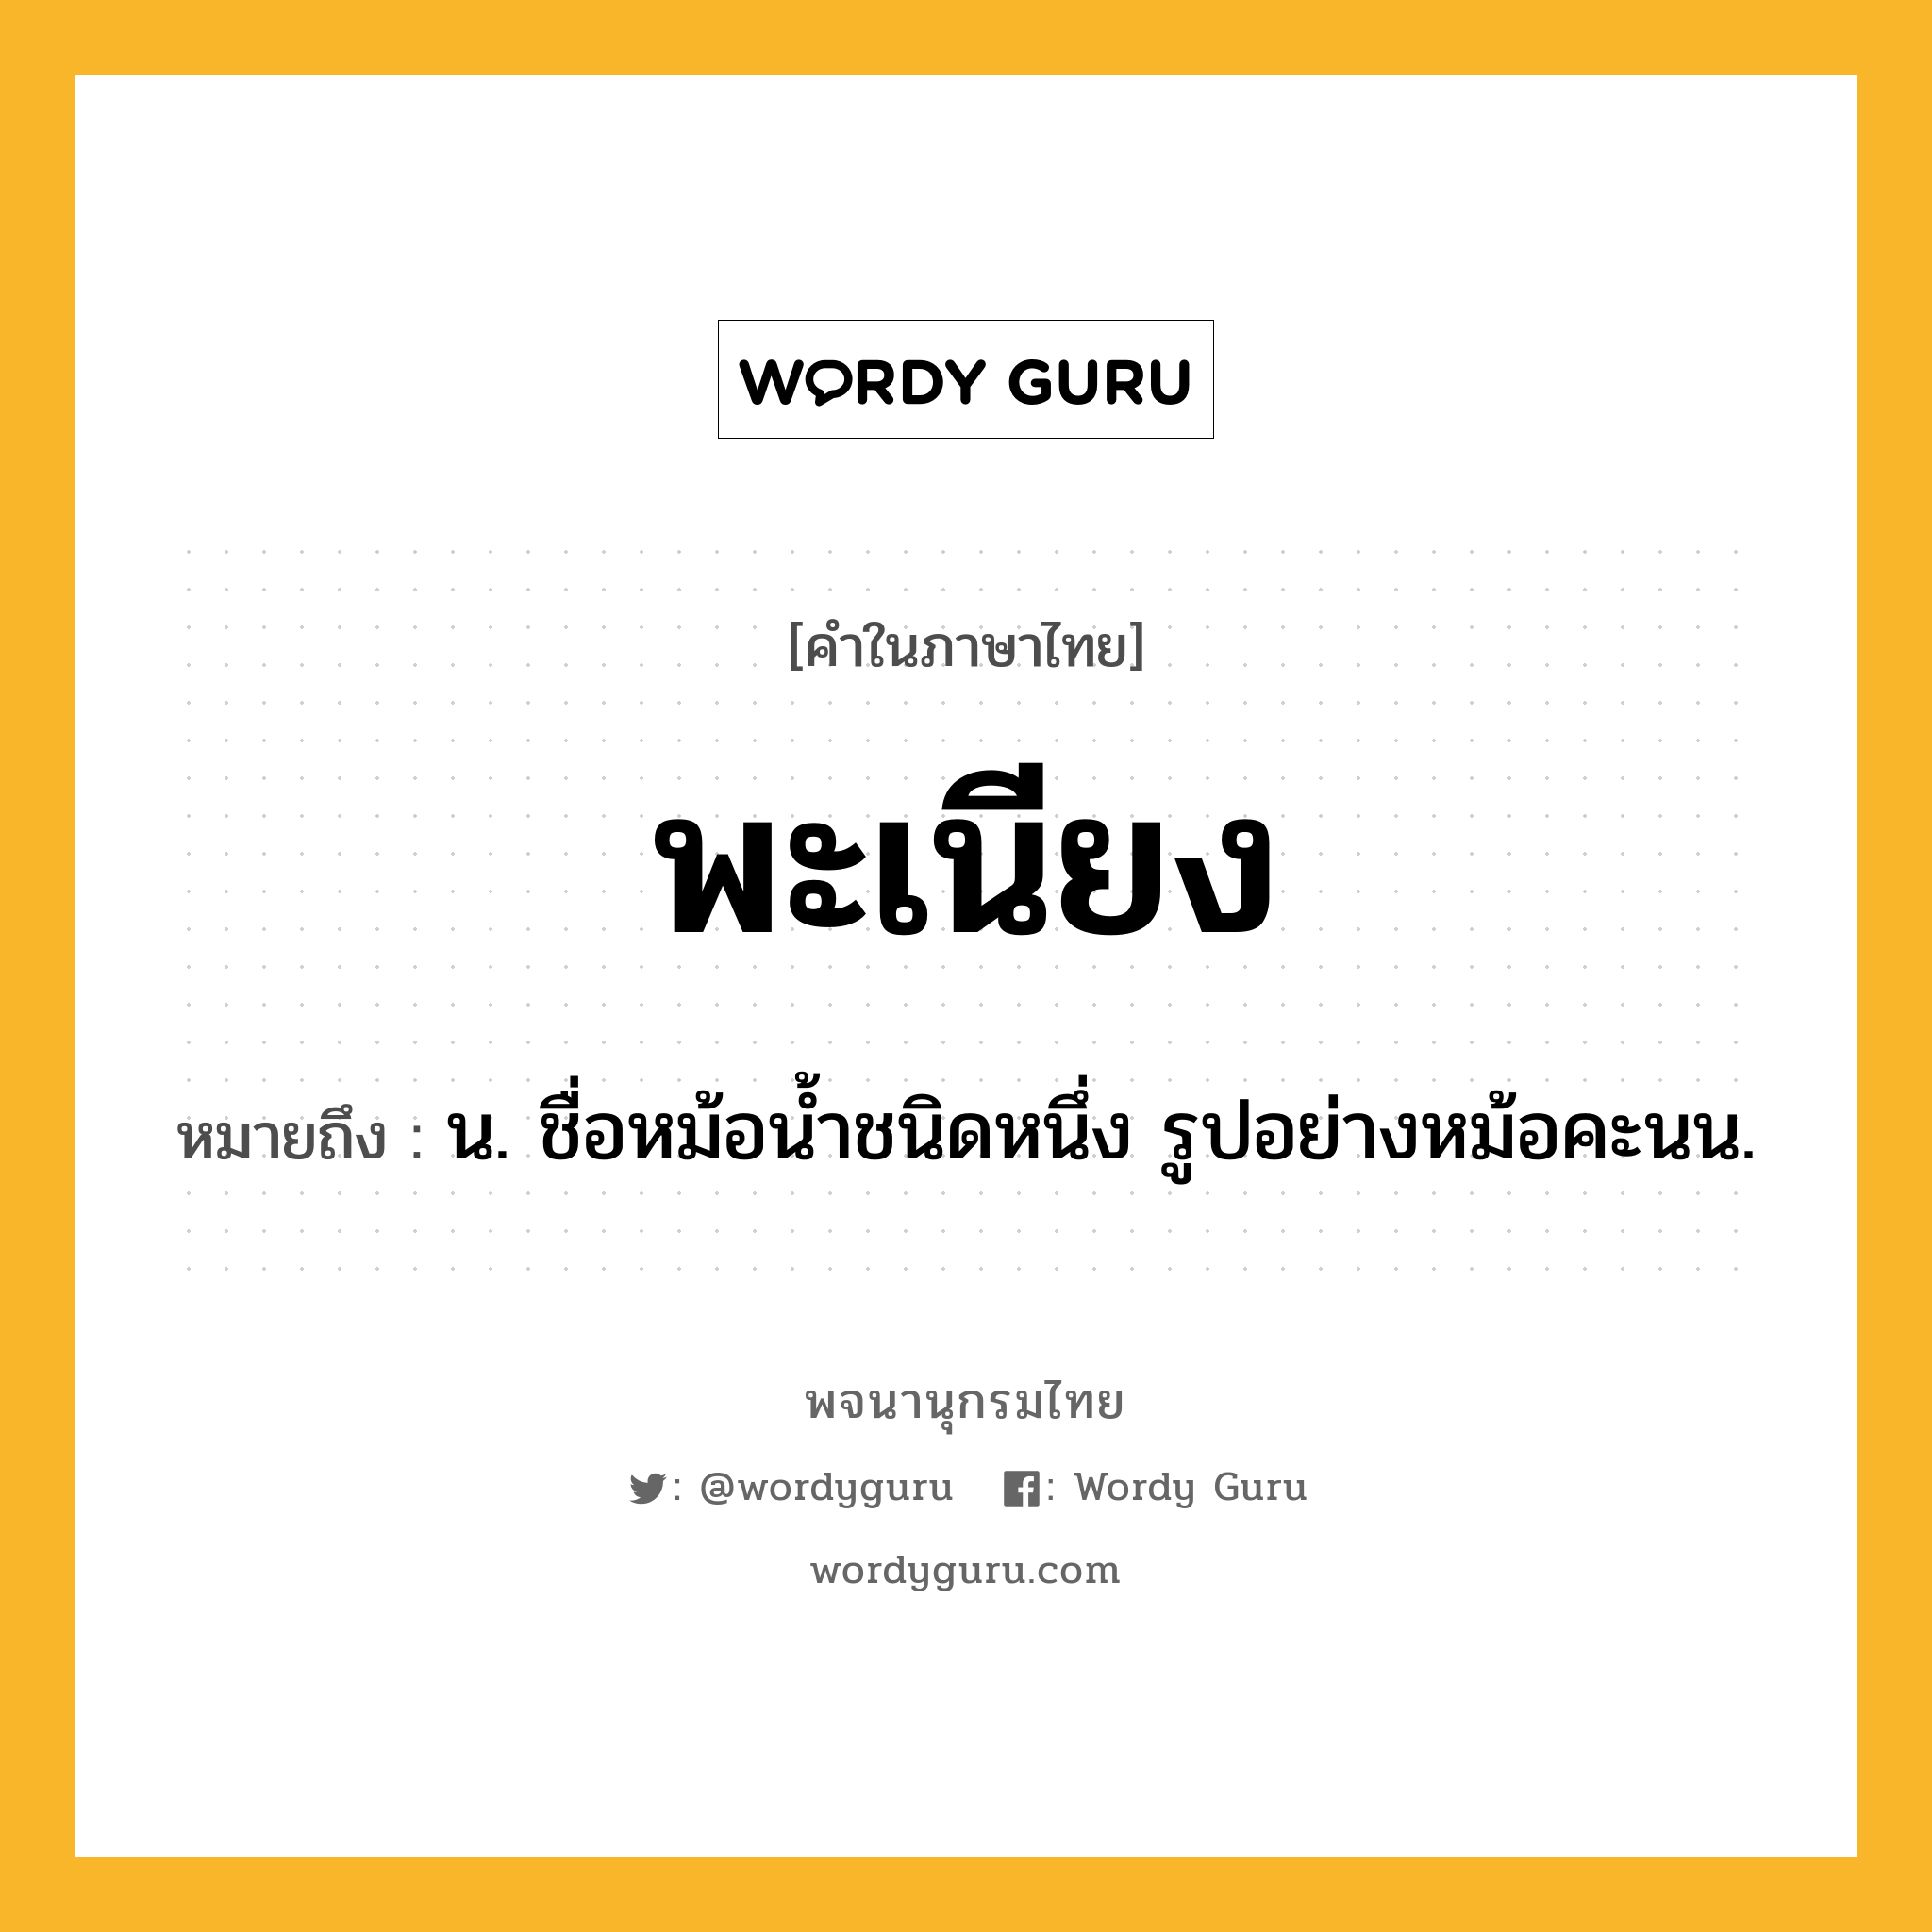 พะเนียง ความหมาย หมายถึงอะไร?, คำในภาษาไทย พะเนียง หมายถึง น. ชื่อหม้อนํ้าชนิดหนึ่ง รูปอย่างหม้อคะนน.